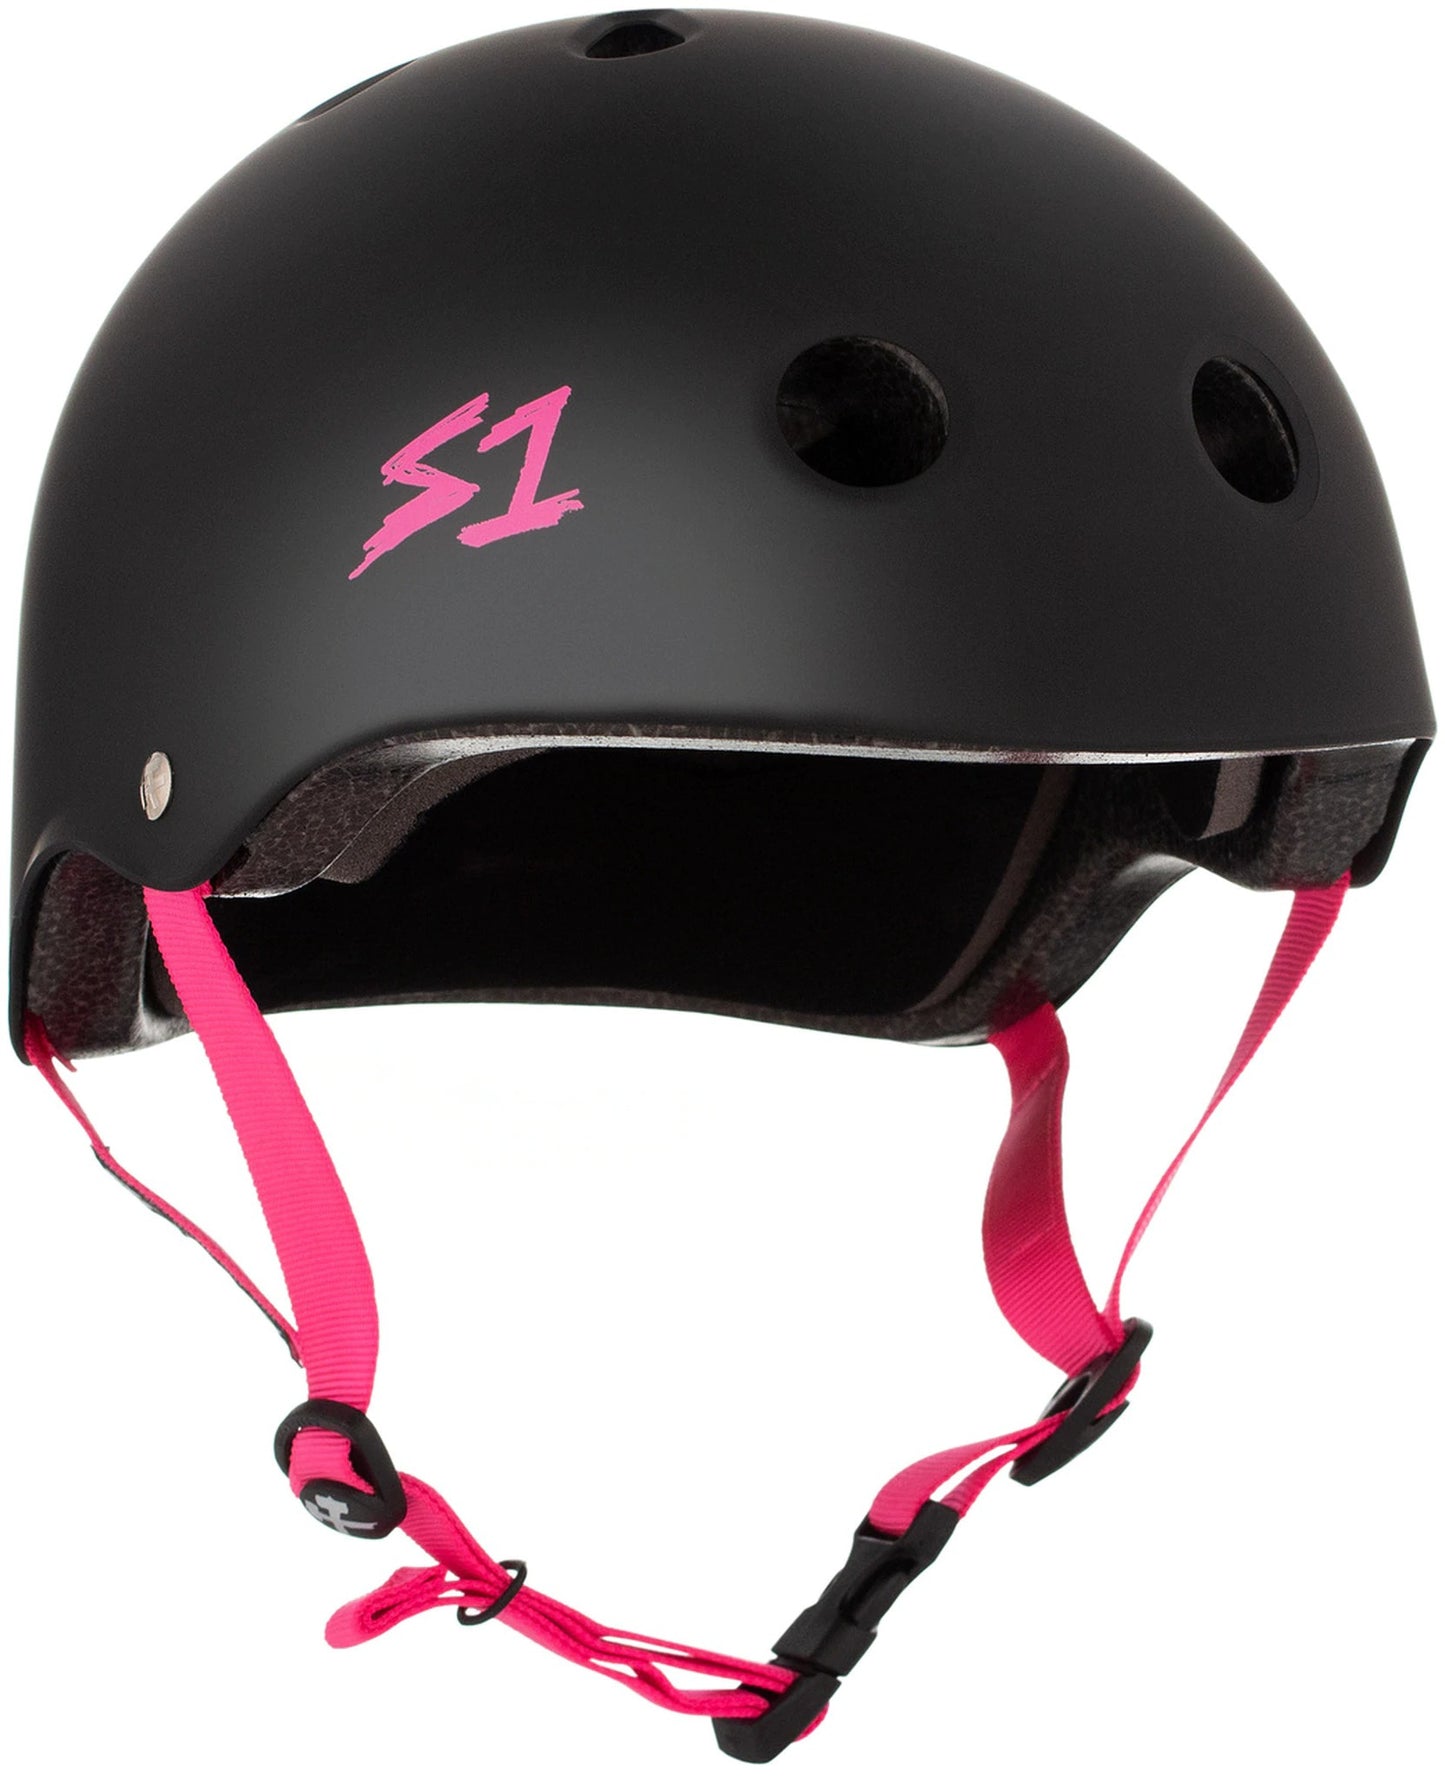 S One Lifer Helmet Skate - Black Matte/Pink Strap